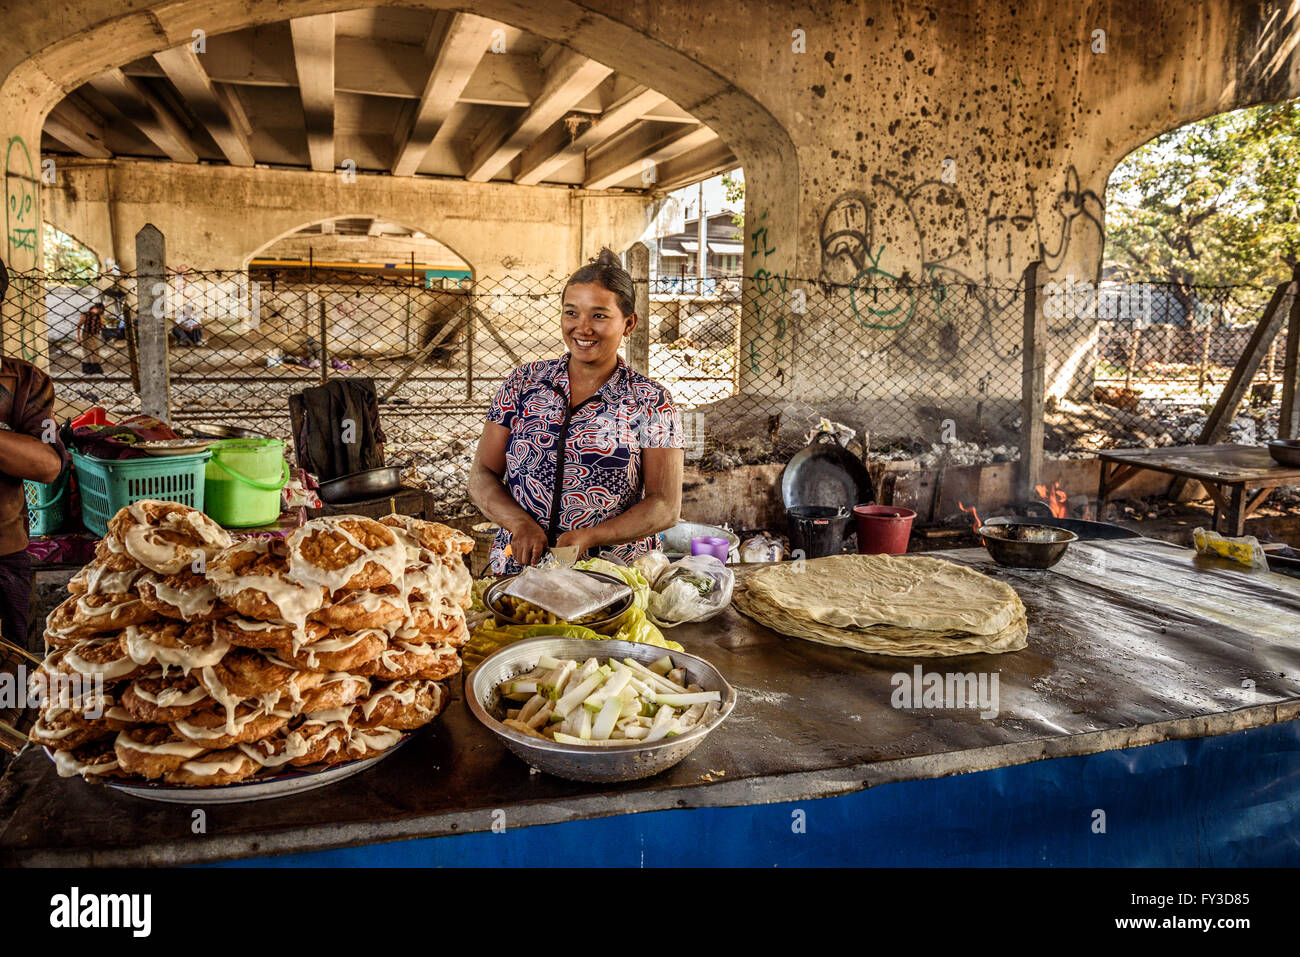 Cuisson et vend des aliments de rue dans la région de Yangon. Banque D'Images